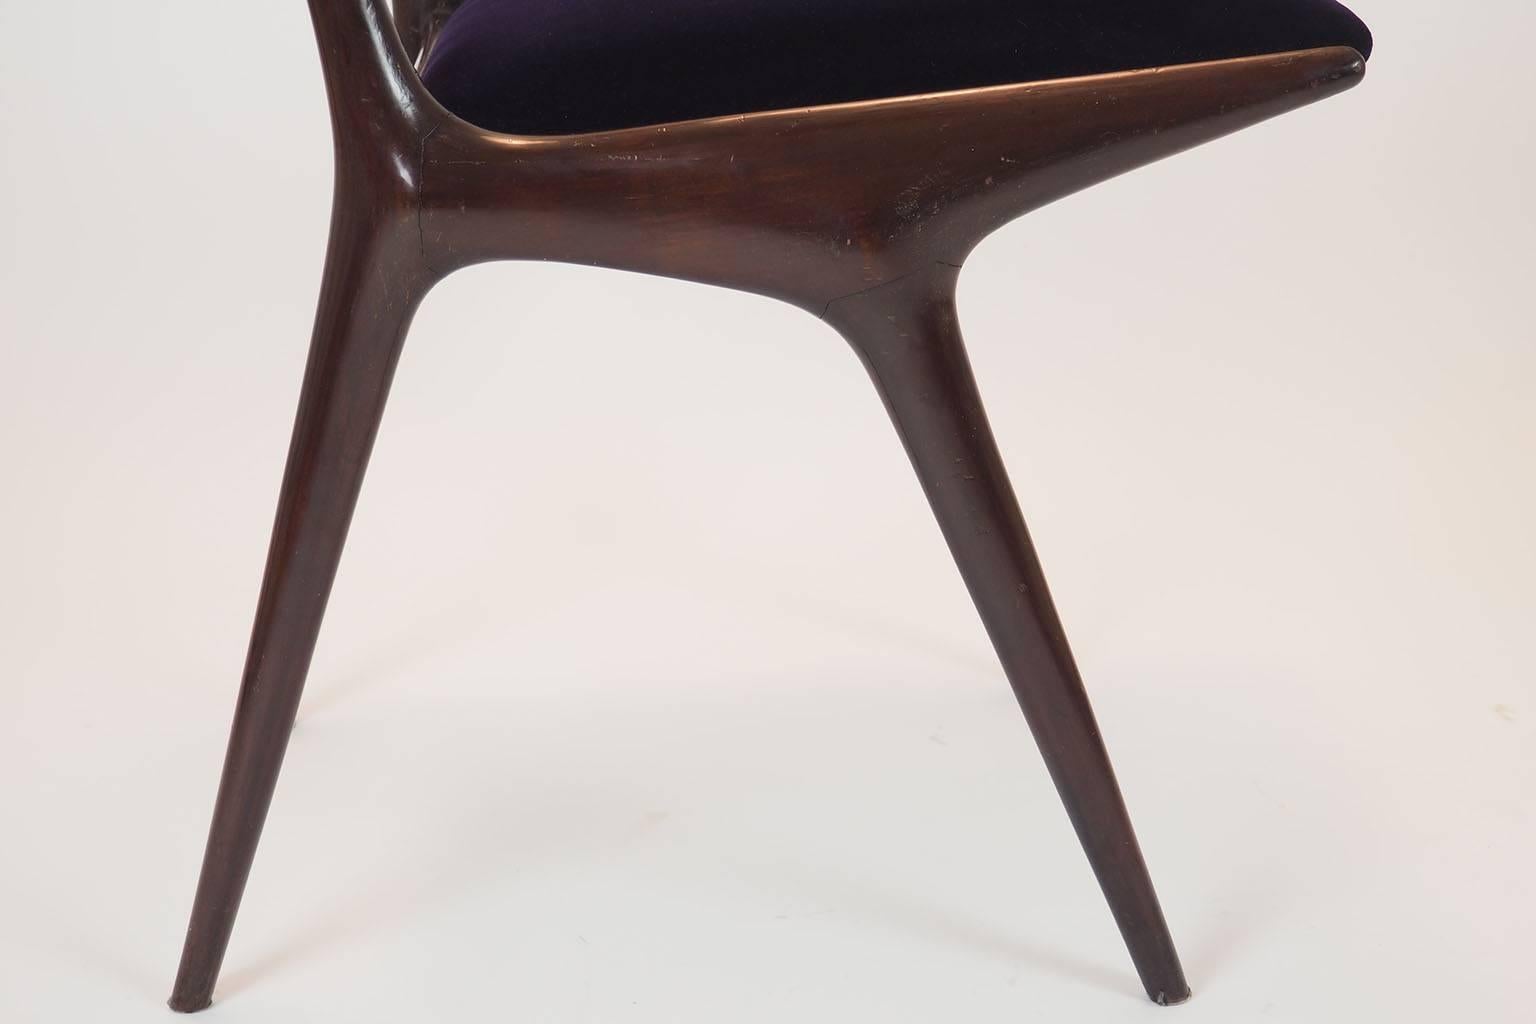 Mid-20th Century Carlo de Carli Sculptural Chair Designed for Cassina, Milano IX Triennale, 1951